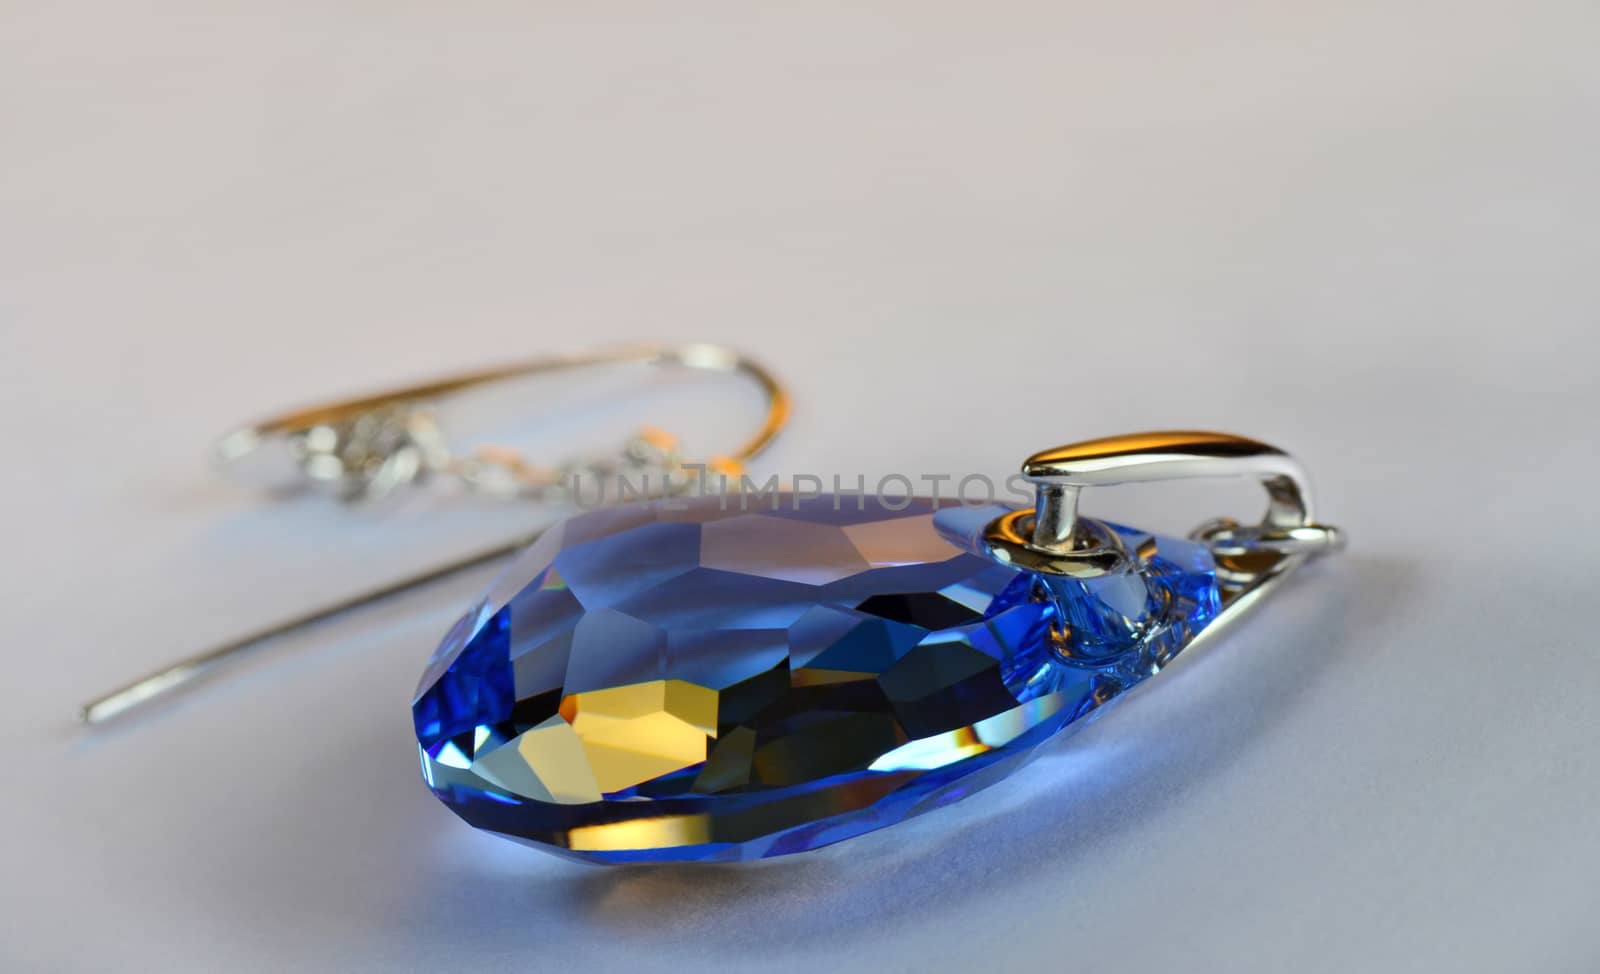 Huge blue crystal earring. Macro photo.